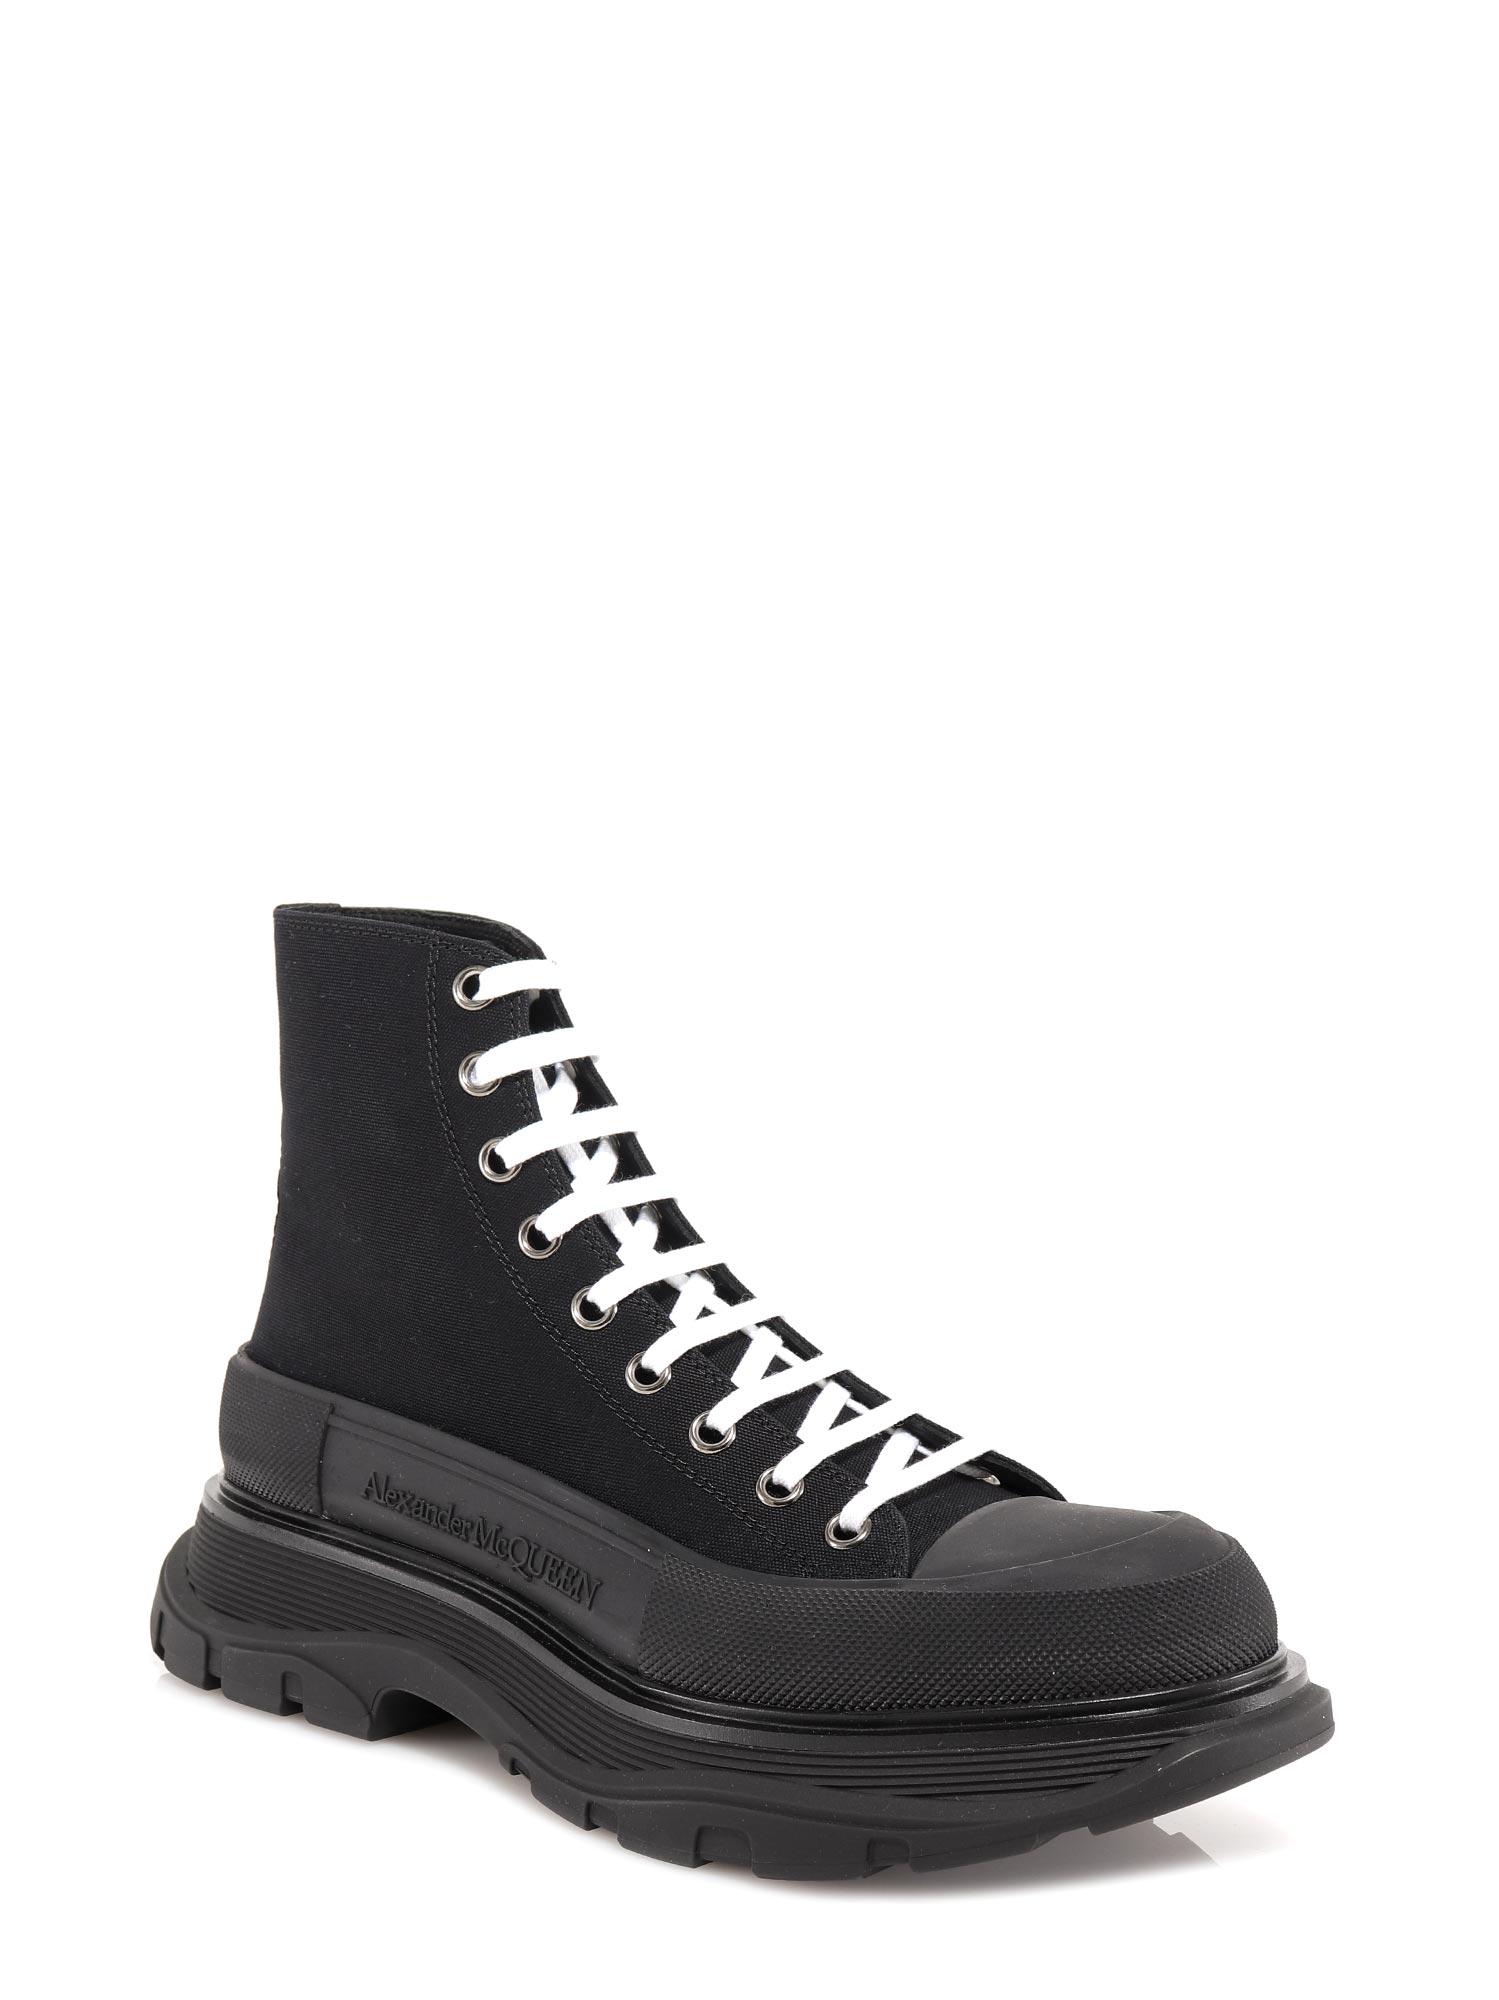 Alexander McQueen Canvas Tread Slick Boots in Black for Men - Lyst